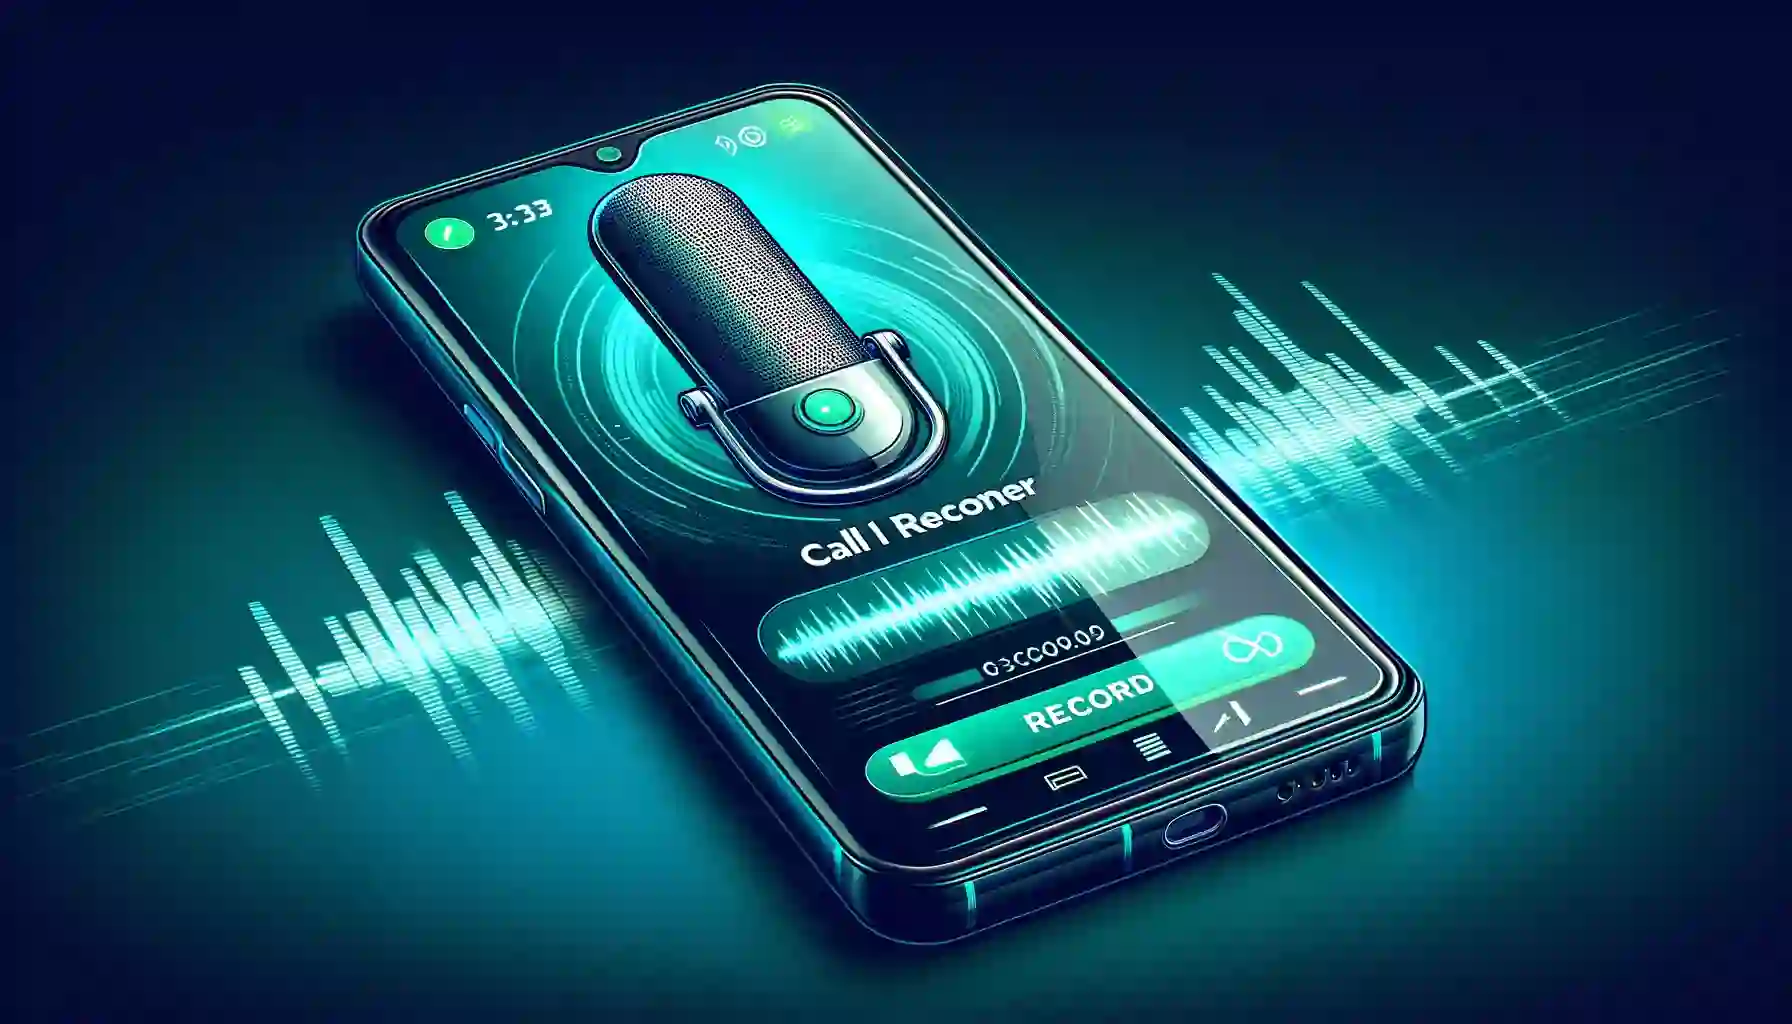 Callmama mobile voice recorder feature